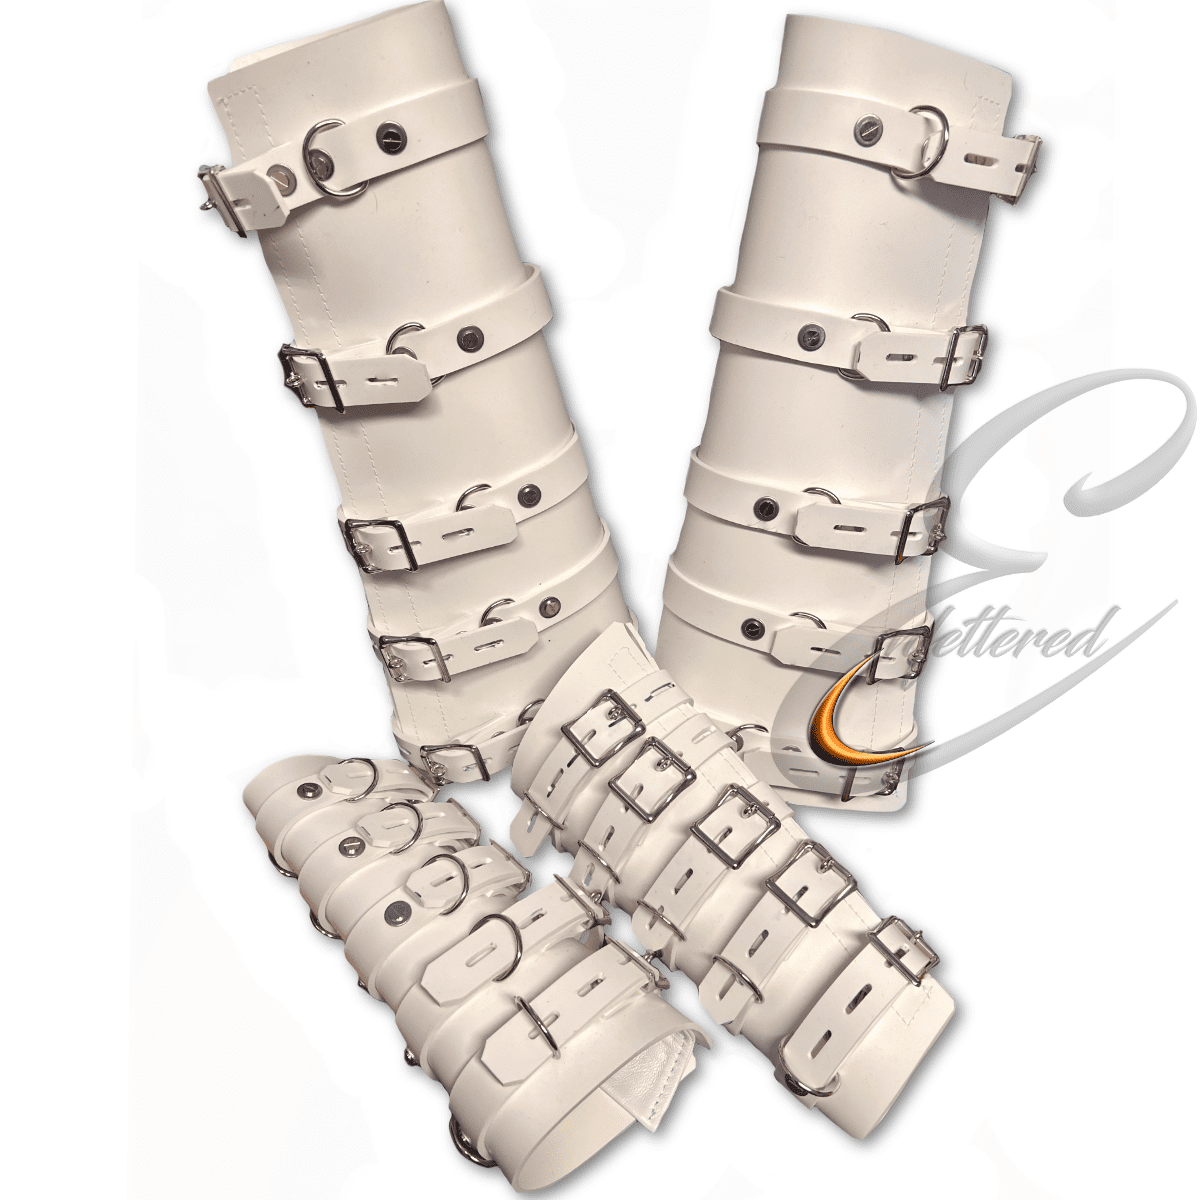 Enfettered Silicone Bondage Leg & Arm Binders